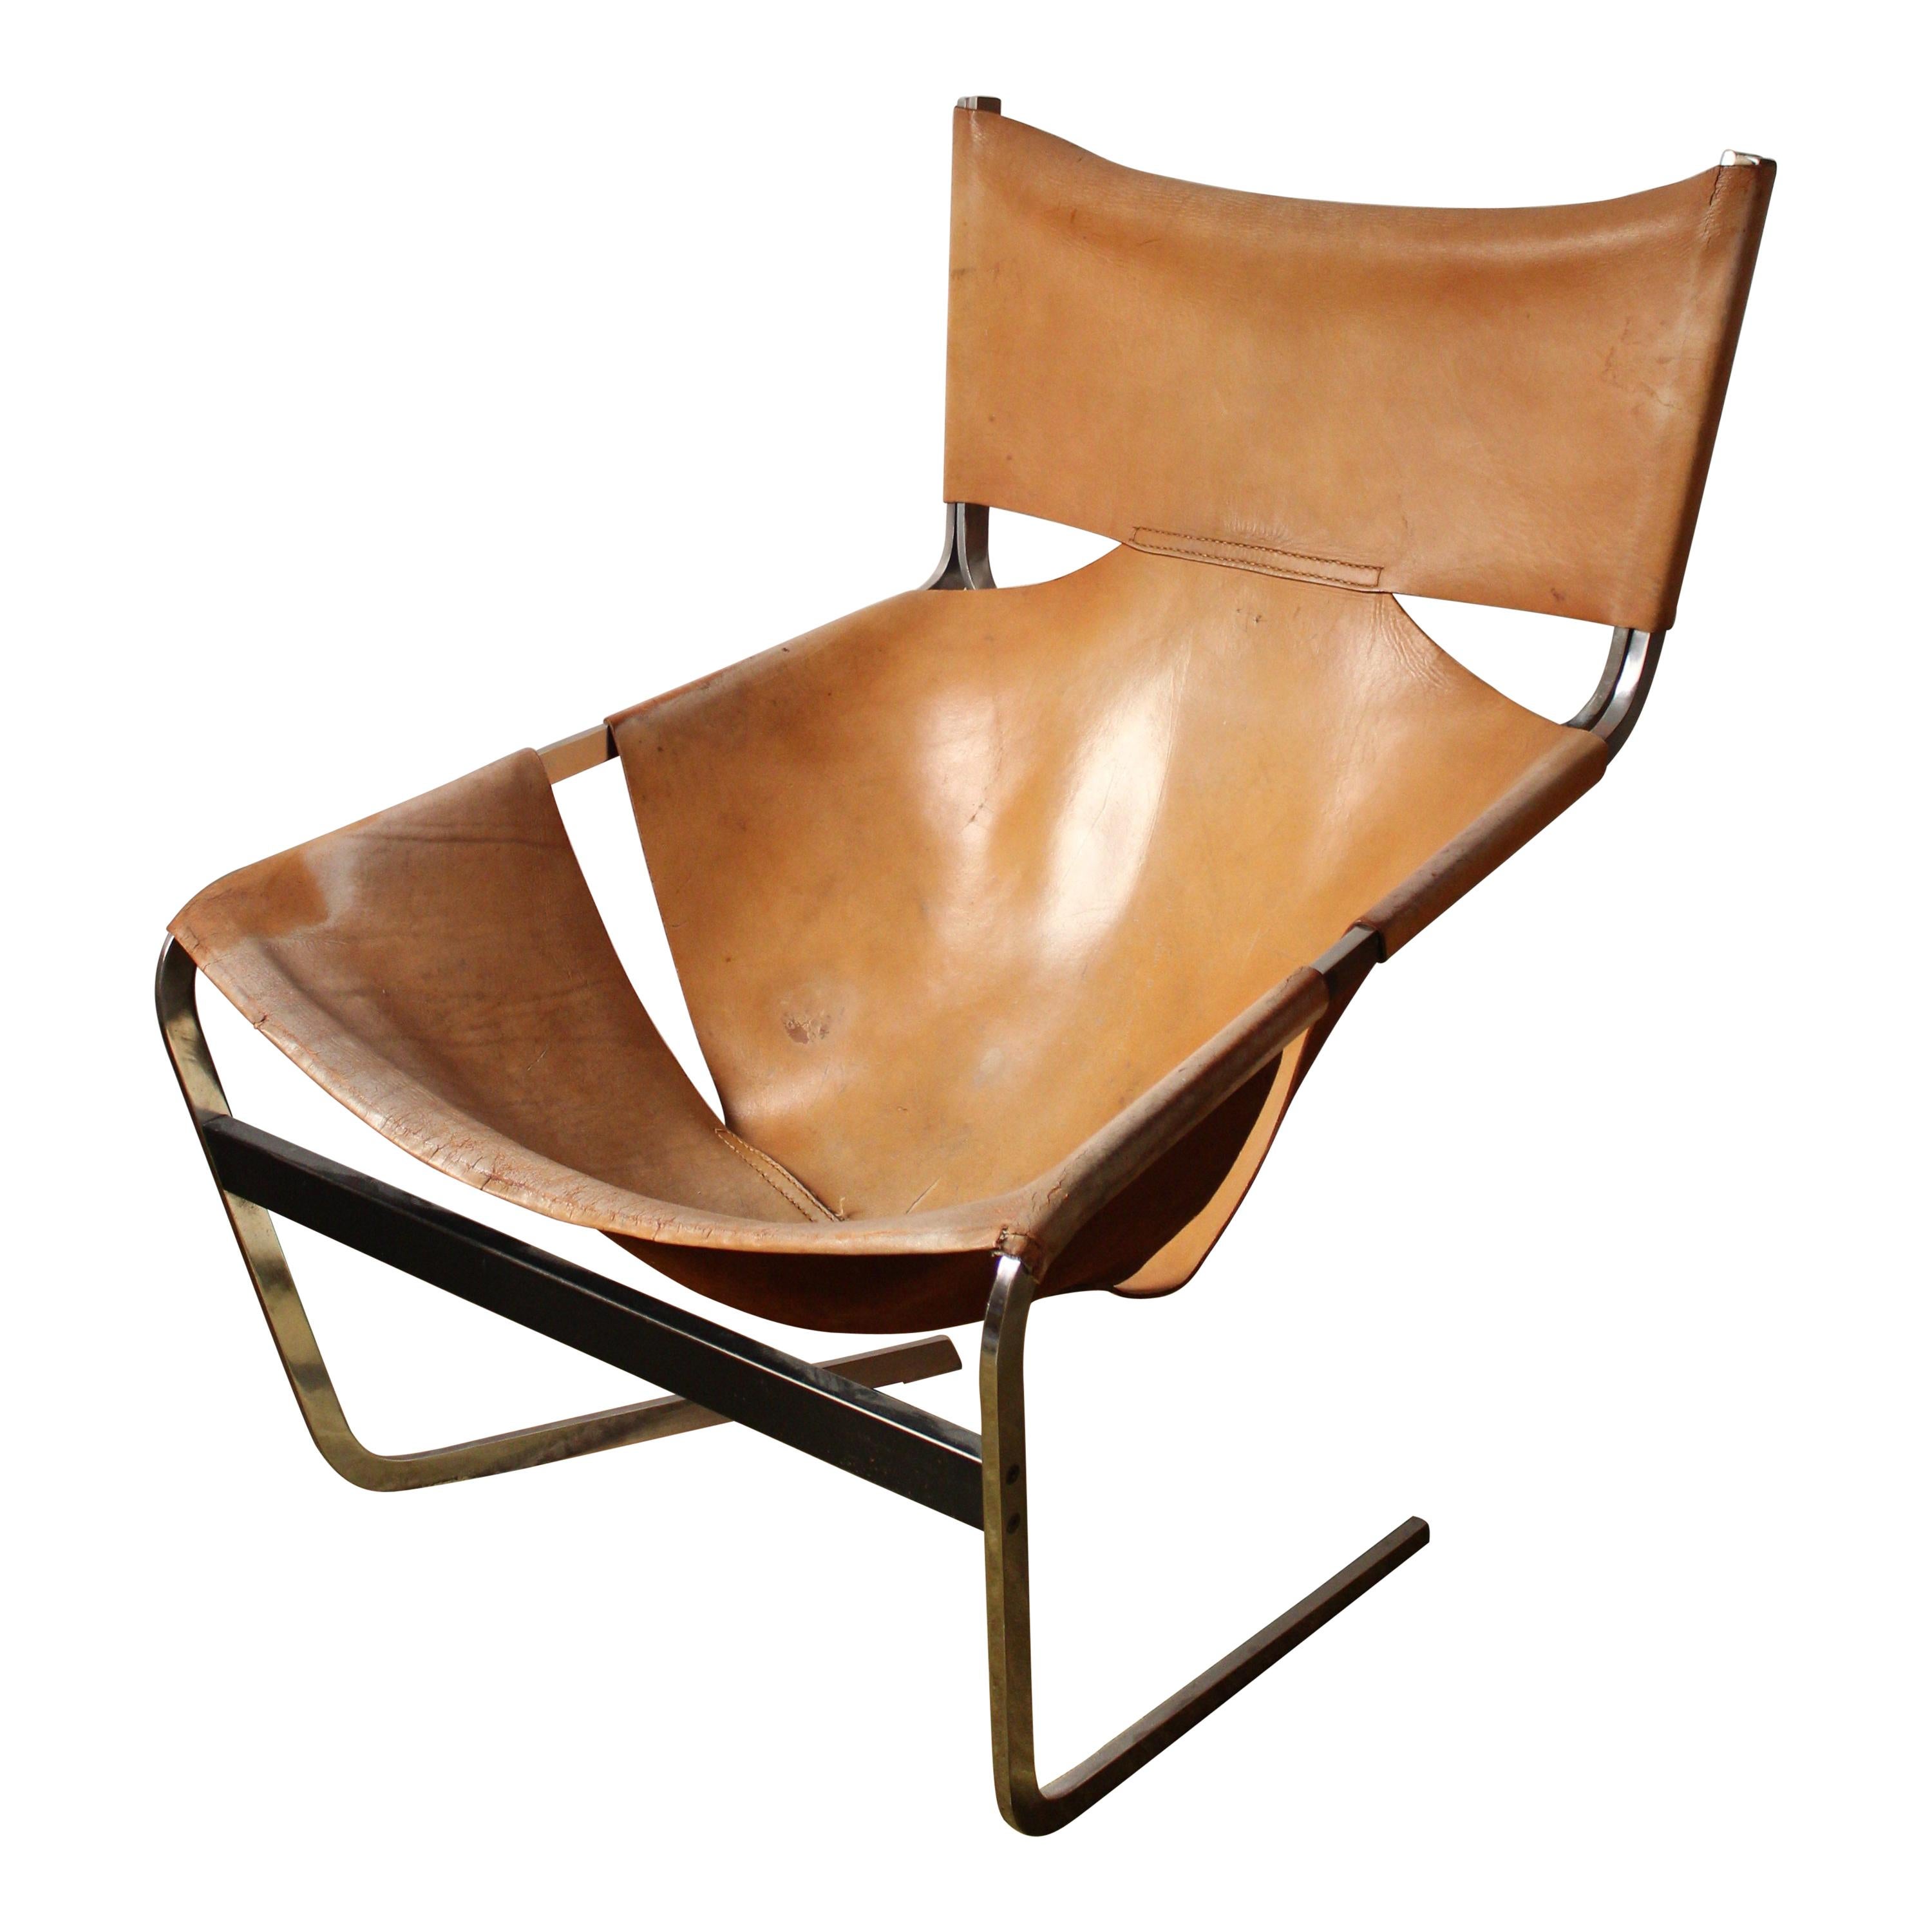 Pierre Paulin, Lounge Chair, Leather, Steel, Artifort, 1963